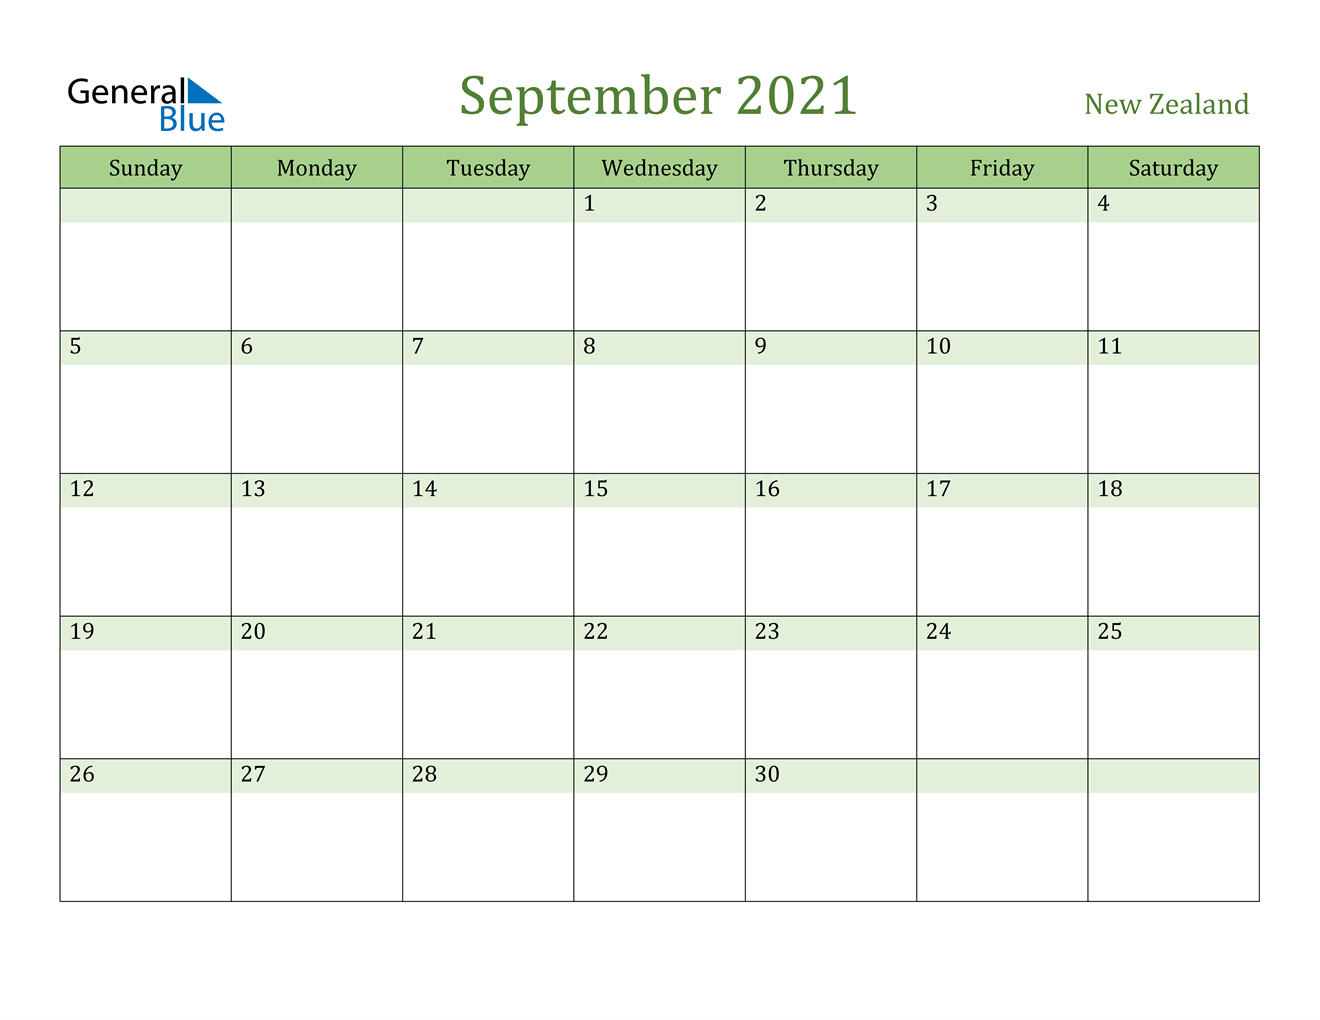 September 2021 Calendar - New Zealand